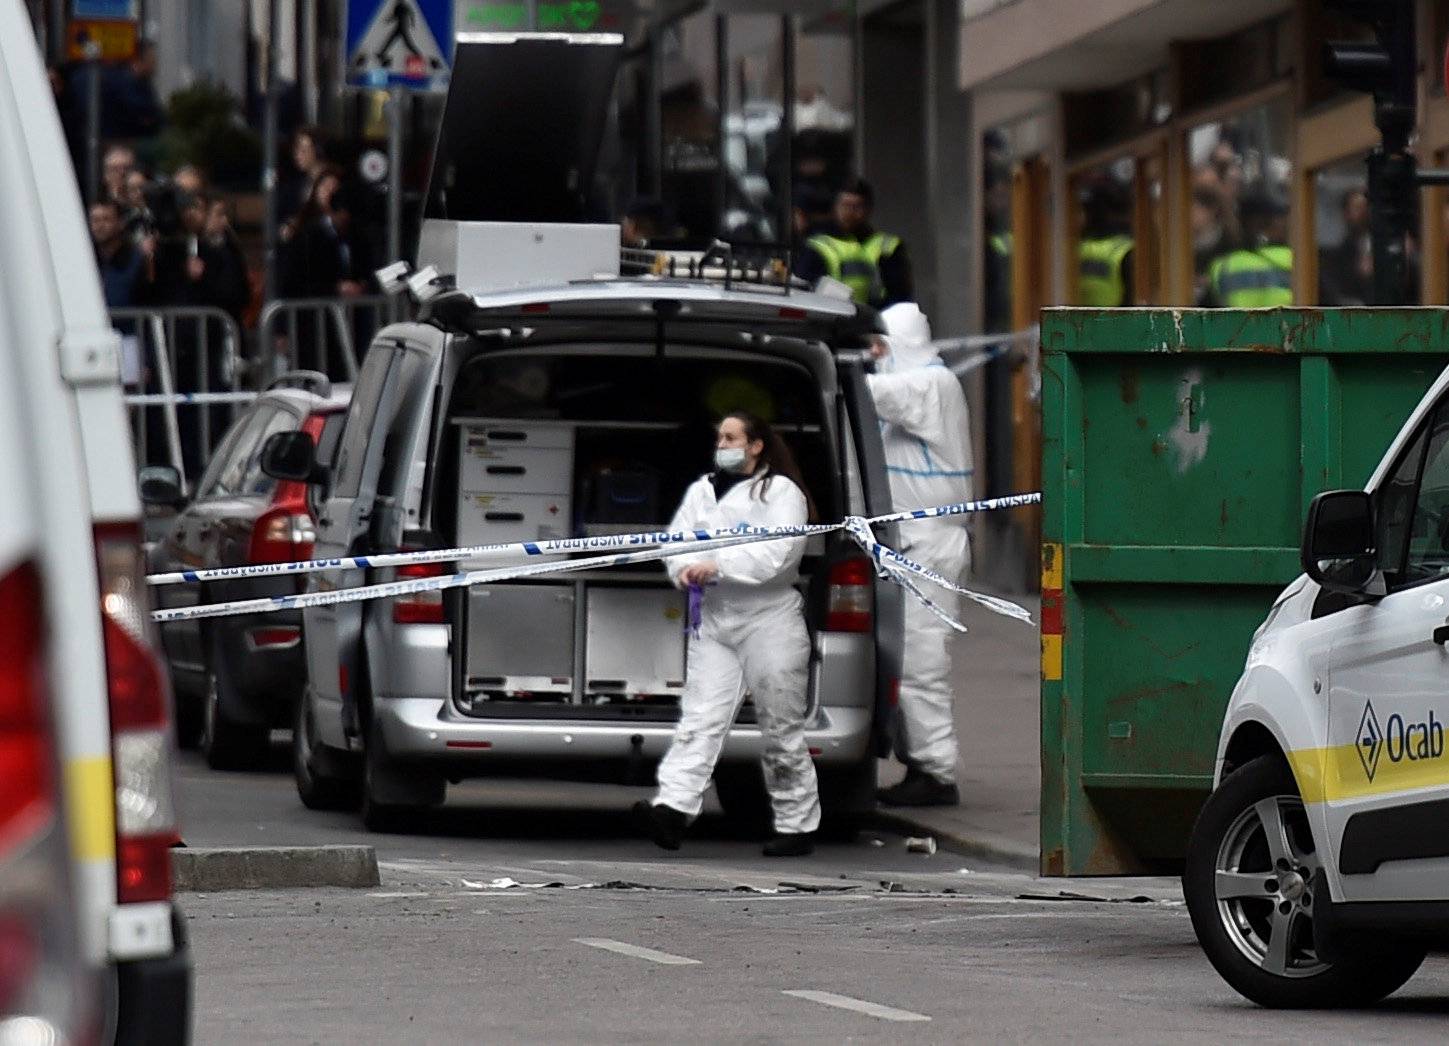 Forensic police investigators work at the crime scene in central Stockholm